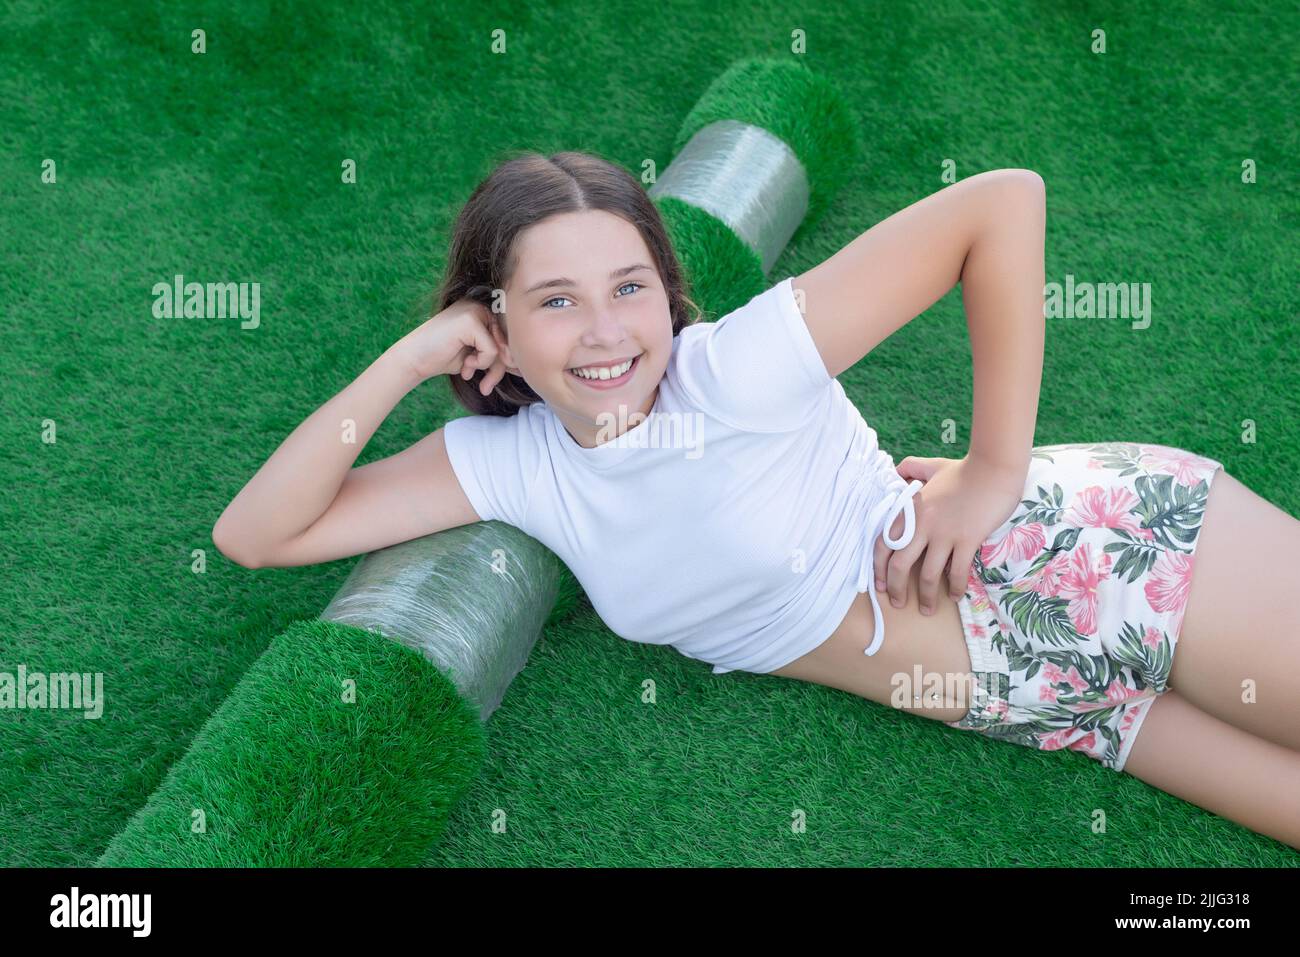 Giovane ragazza caucasica sorridente sdraiata su un nuovo rotolo di erba sintetica. Bella erba artificiale pronta a posare Foto Stock